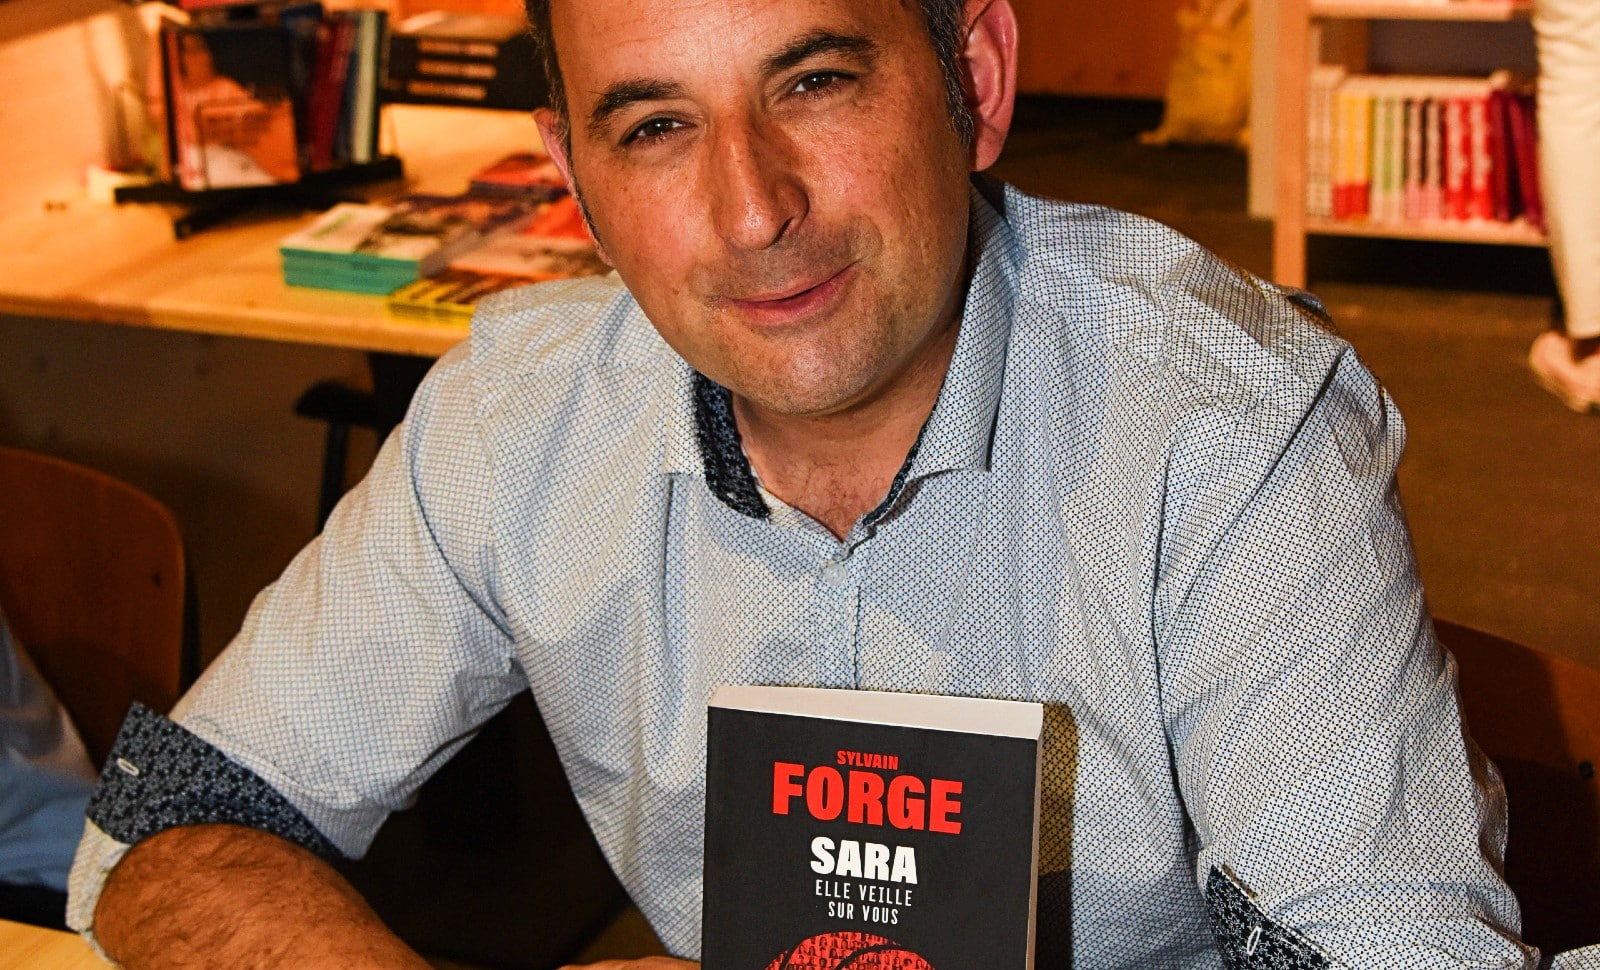 «Sara»: l’enfer numérique selon Sylvain Forge